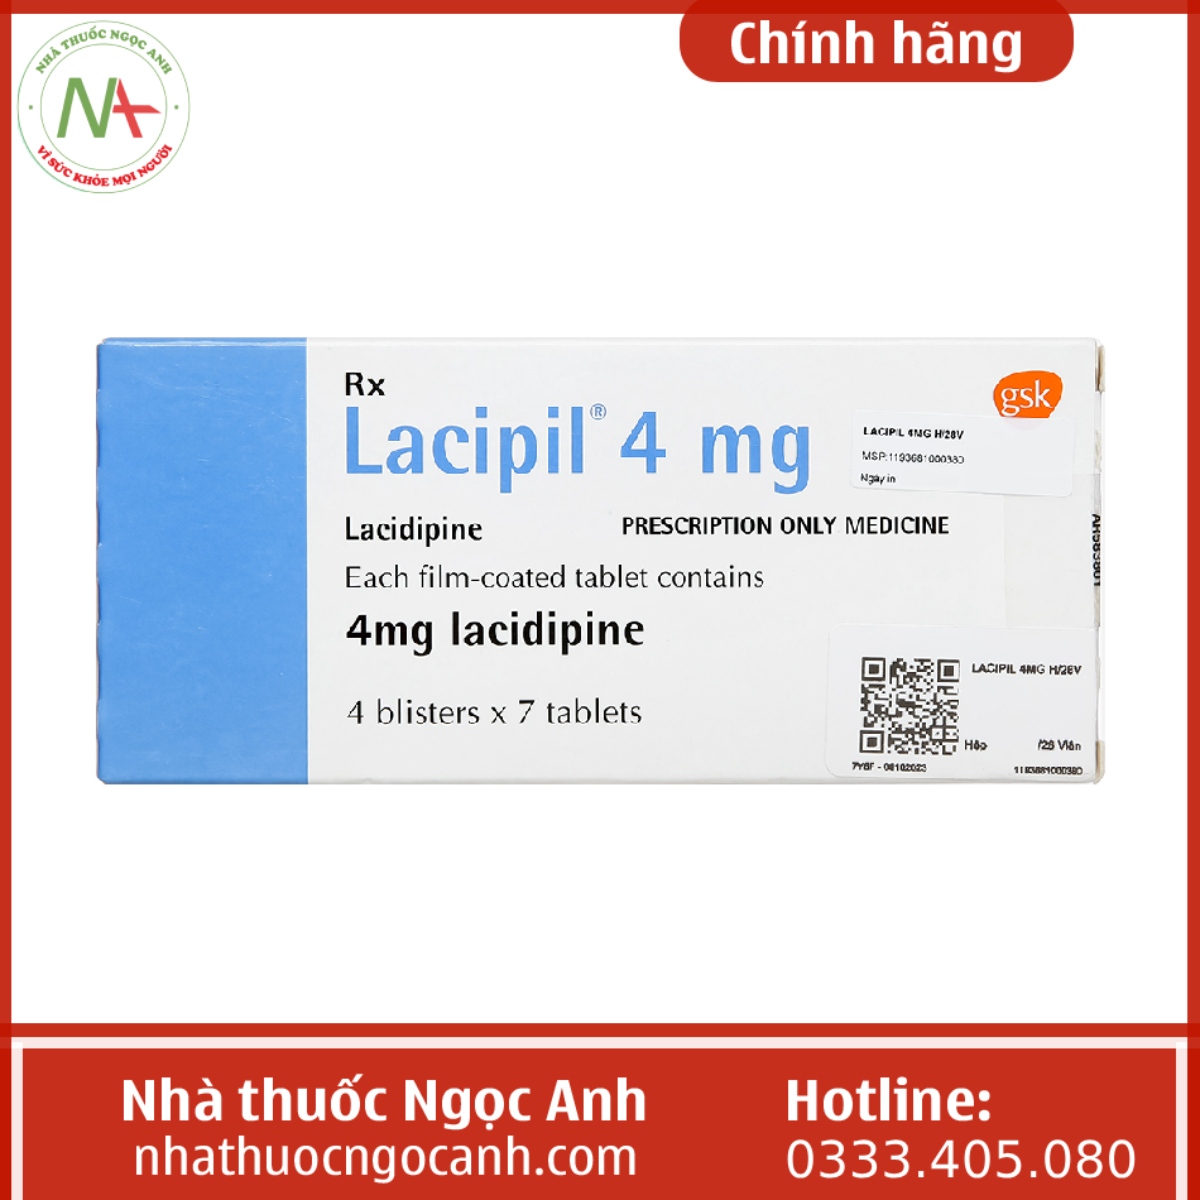 Lacipil 4 mg